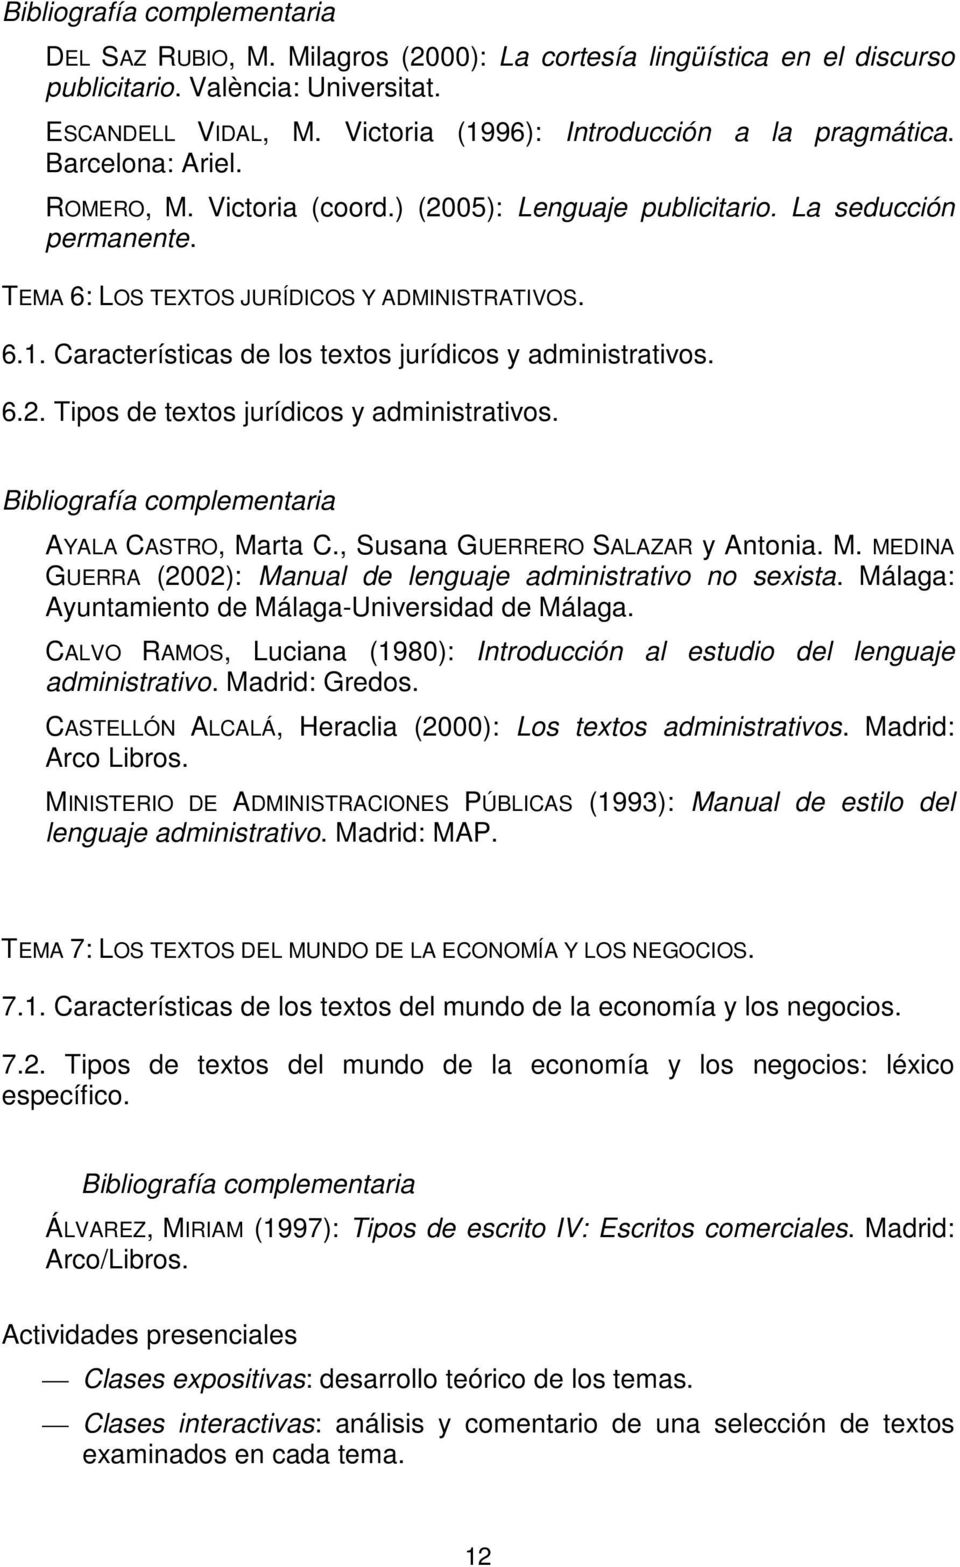 AYALA CASTRO, Marta C., Susana GUERRERO SALAZAR y Antonia. M. MEDINA GUERRA (2002): Manual de lenguaje administrativo no sexista. Málaga: Ayuntamiento de Málaga-Universidad de Málaga.